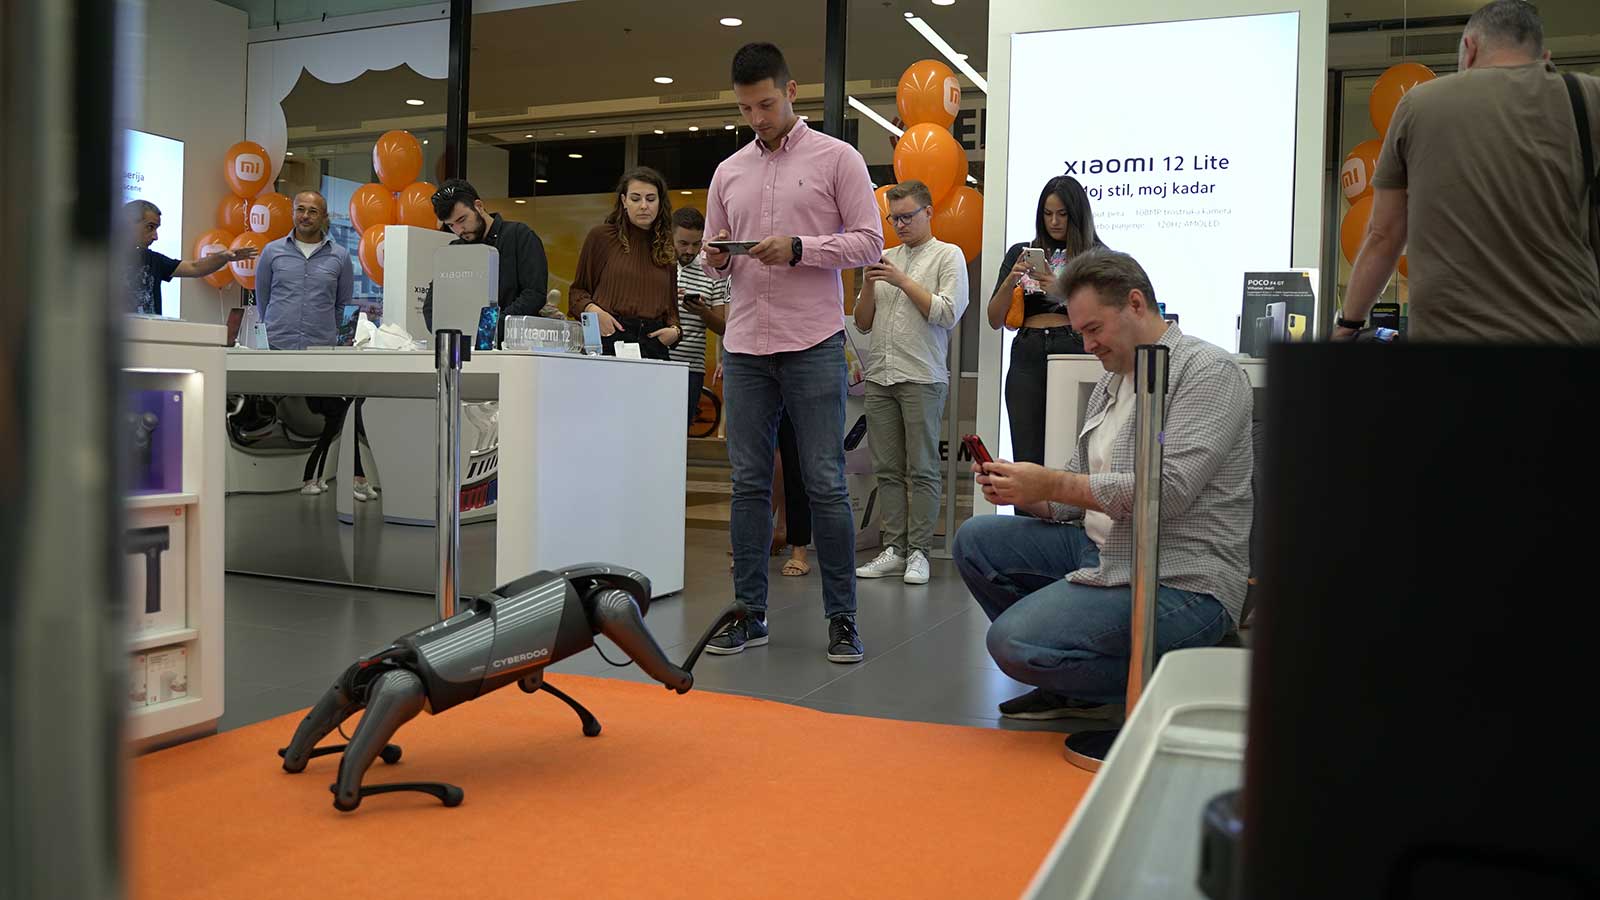 Četveronožni robot Xiaomi CyberDog u Zagrebu najavio Xiaomijeve novitete namijenjene kućnim ljubimcima: Smart Pet Food Feeder i Smart Pet Fountain